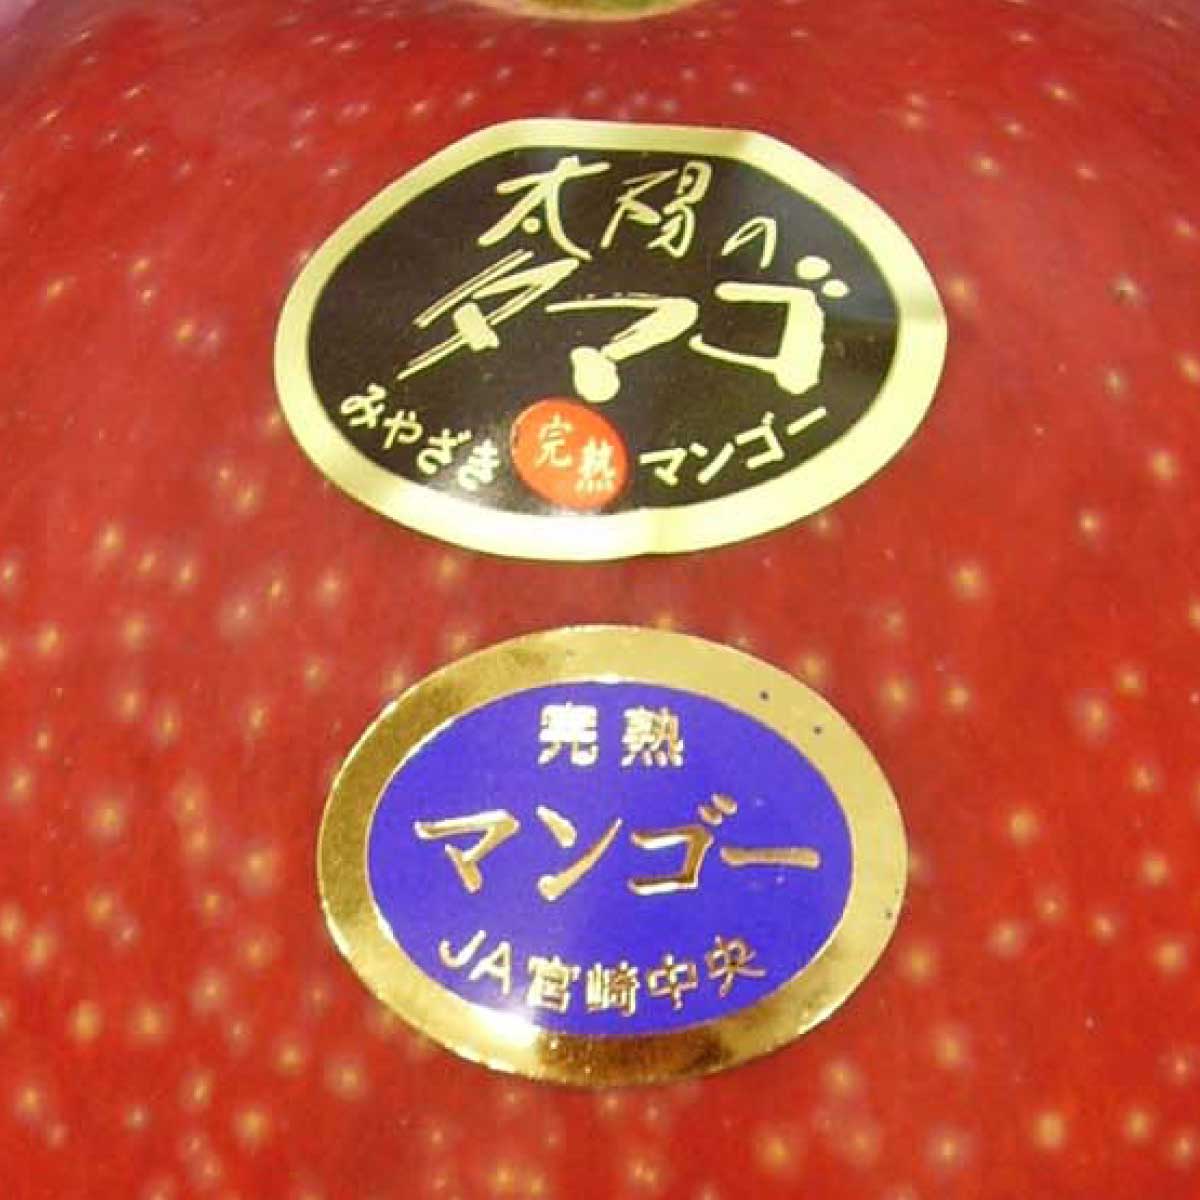 宮崎県産 完熟マンゴー 太陽のタマゴ – とびっきりギフト